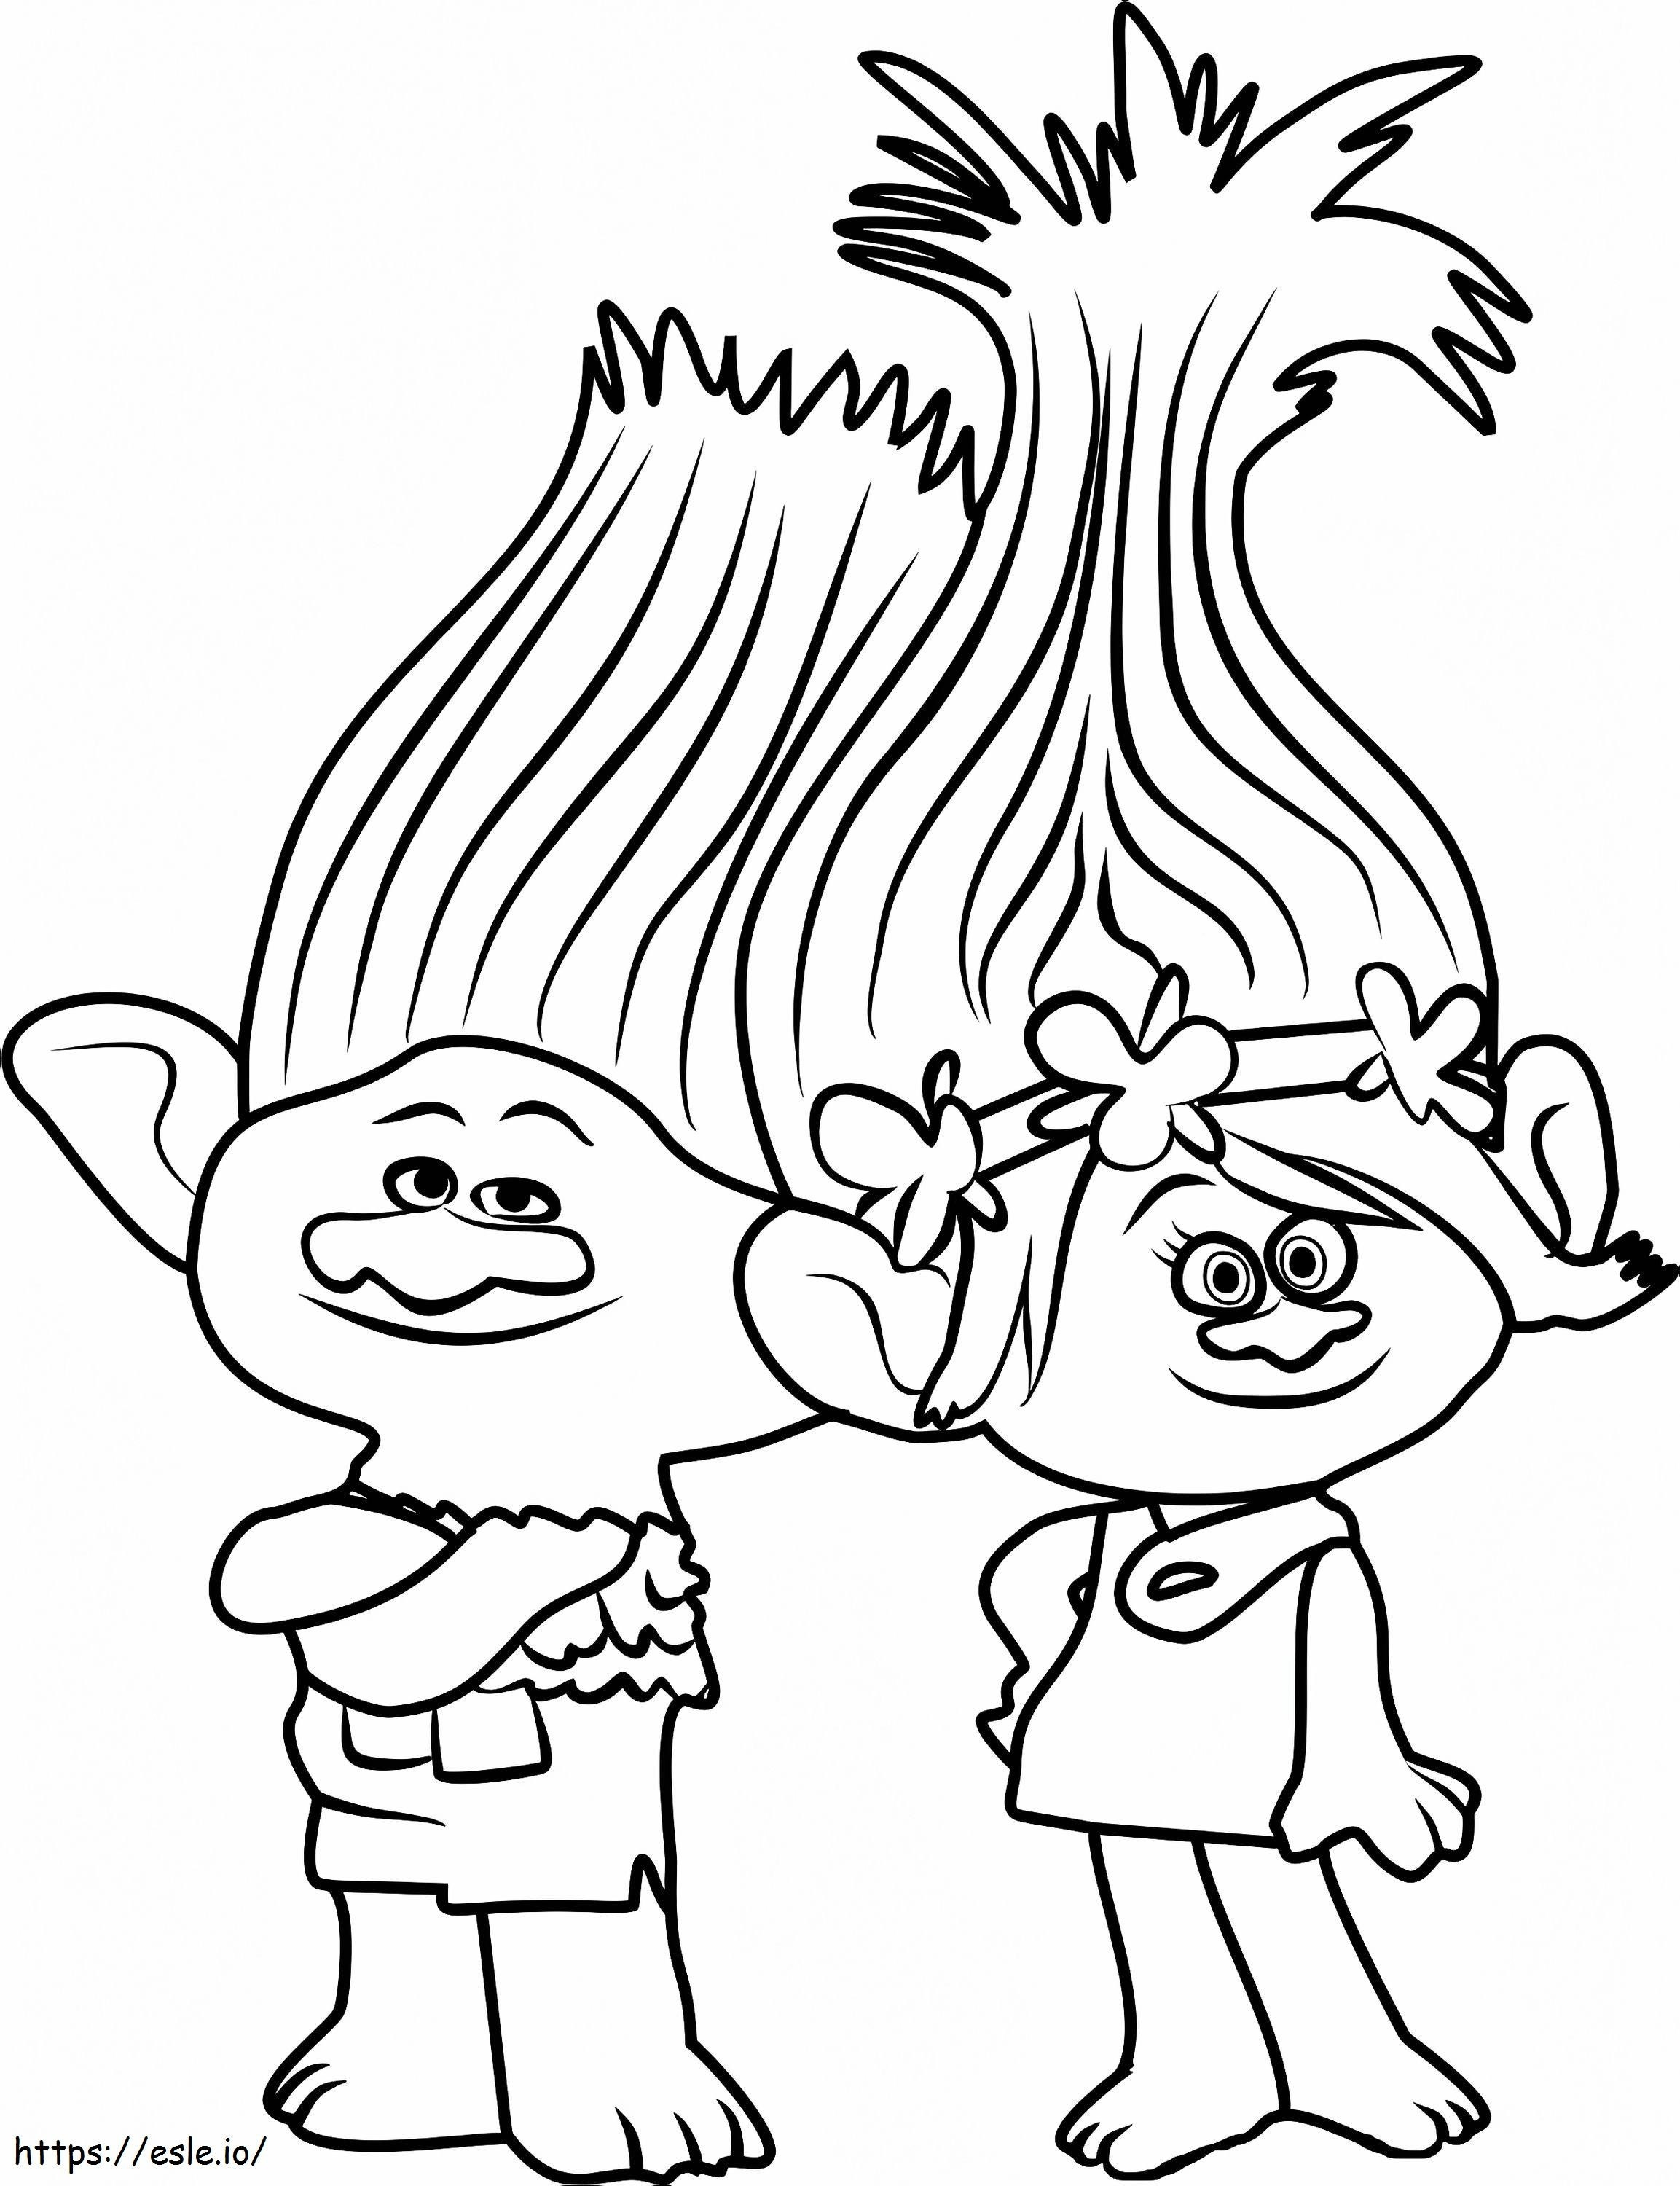  Ramo e Princesa Poppy A4 para colorir